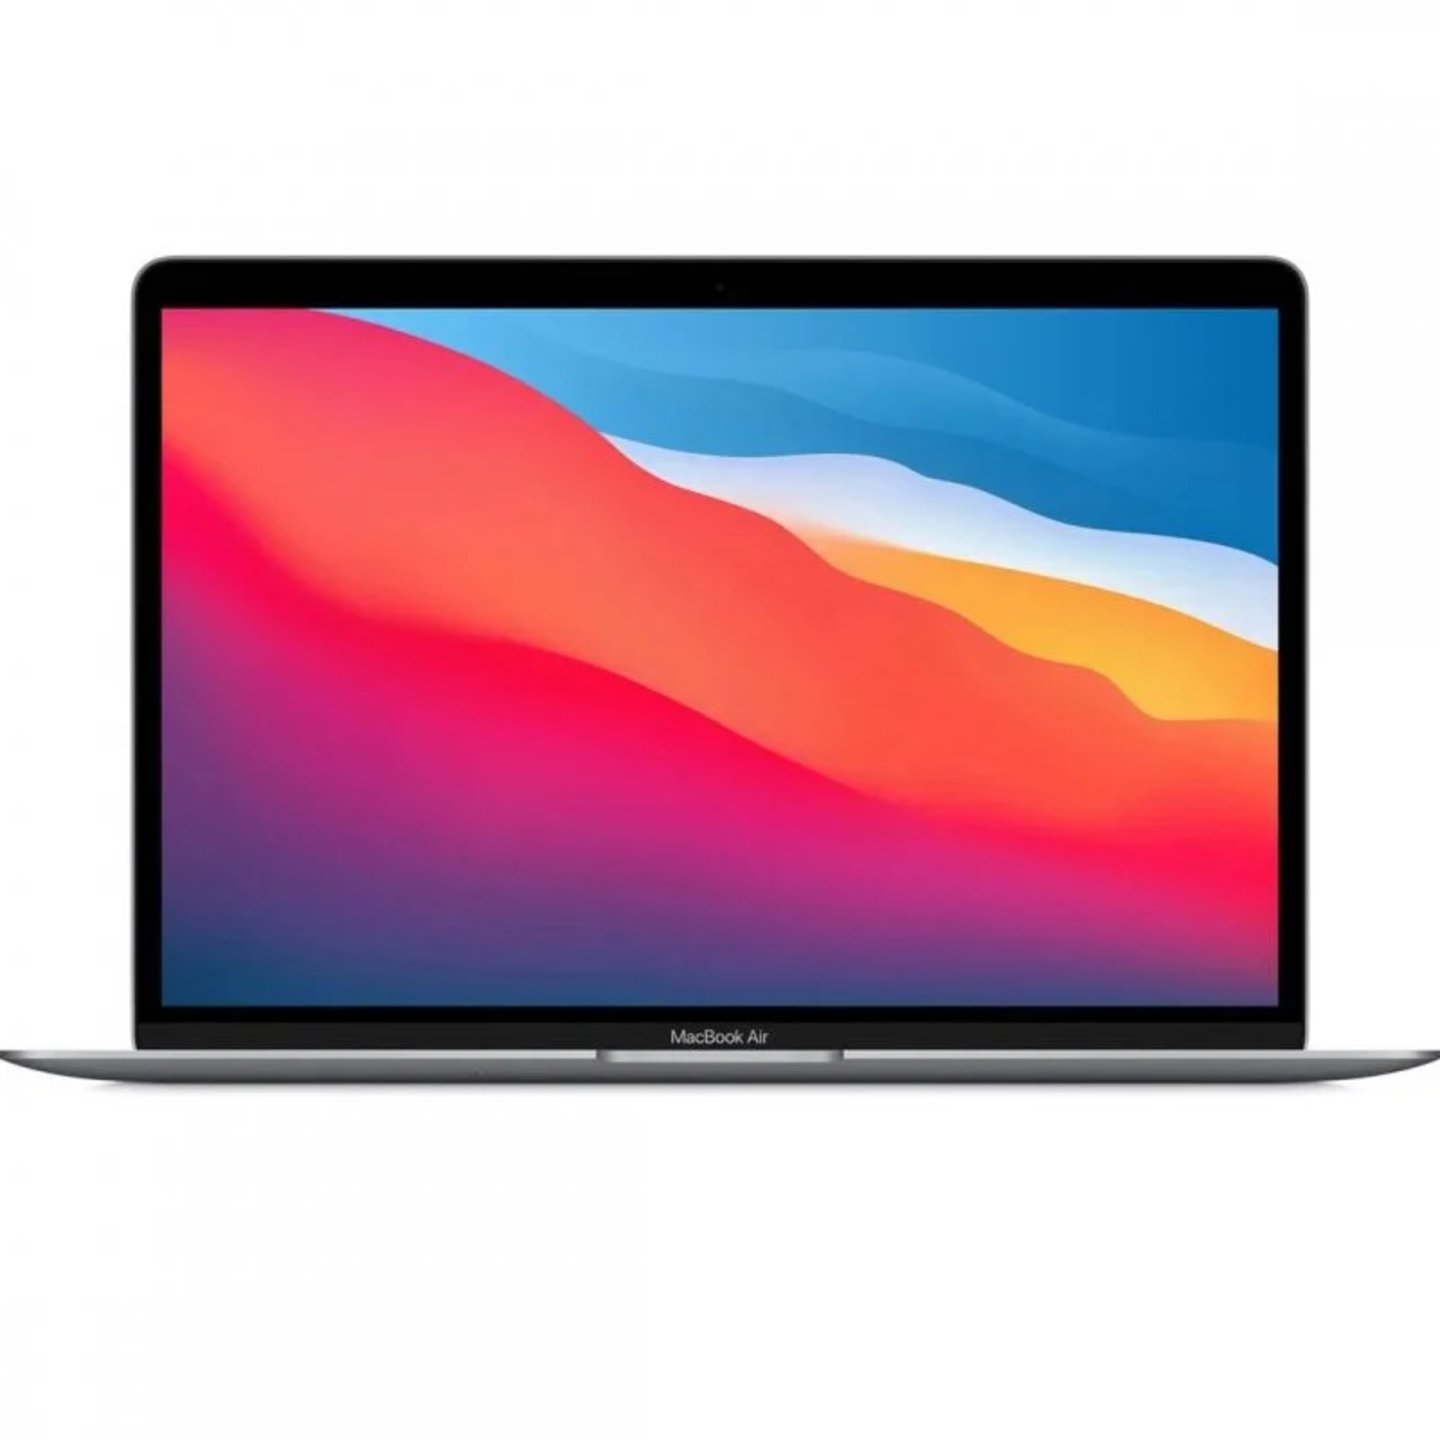 El MacBook Air de pulgadas y chip M1 vuelve a en y cuesta menos de euros